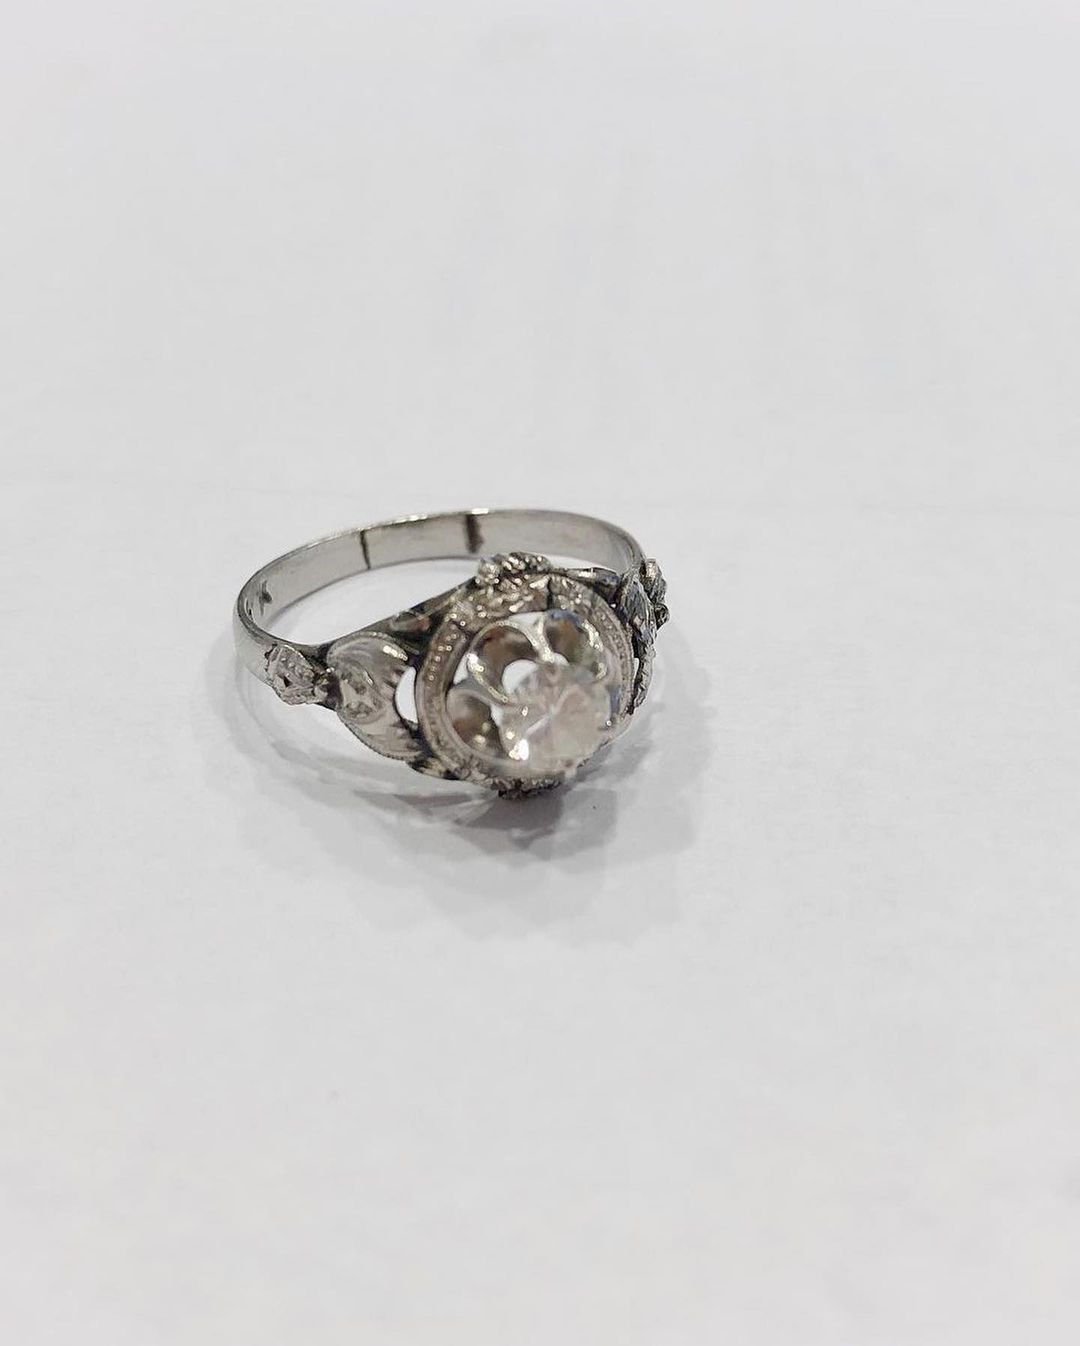 Kinn vintage upcycled heirloom diamond ring
